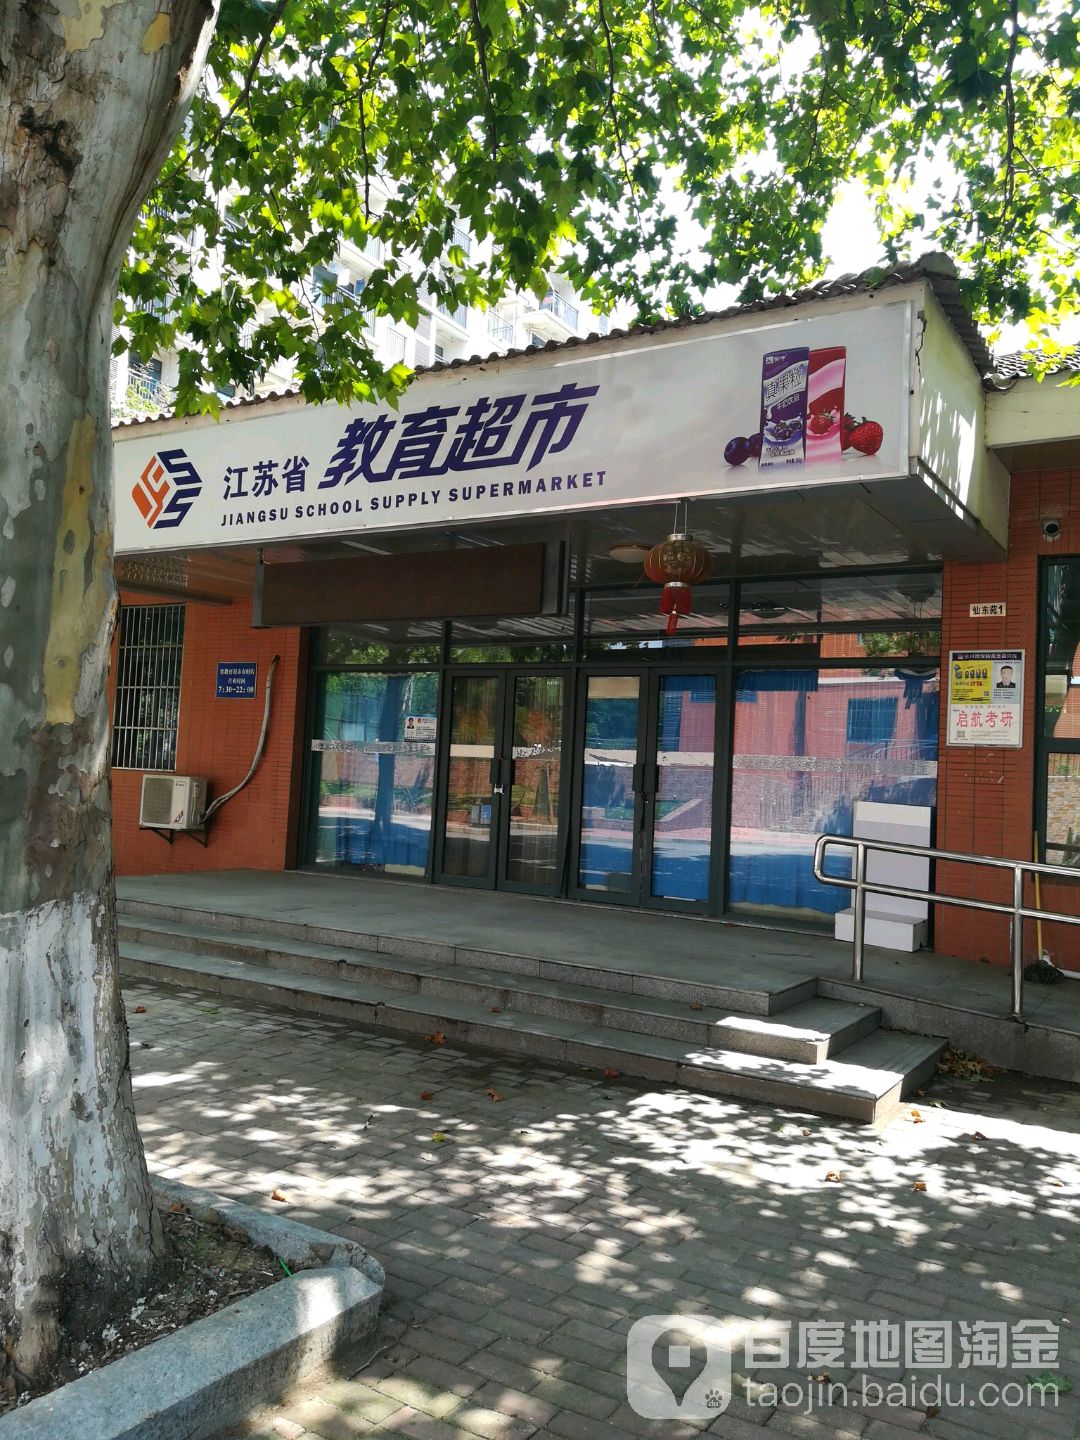 江苏省交易超市(南财店)